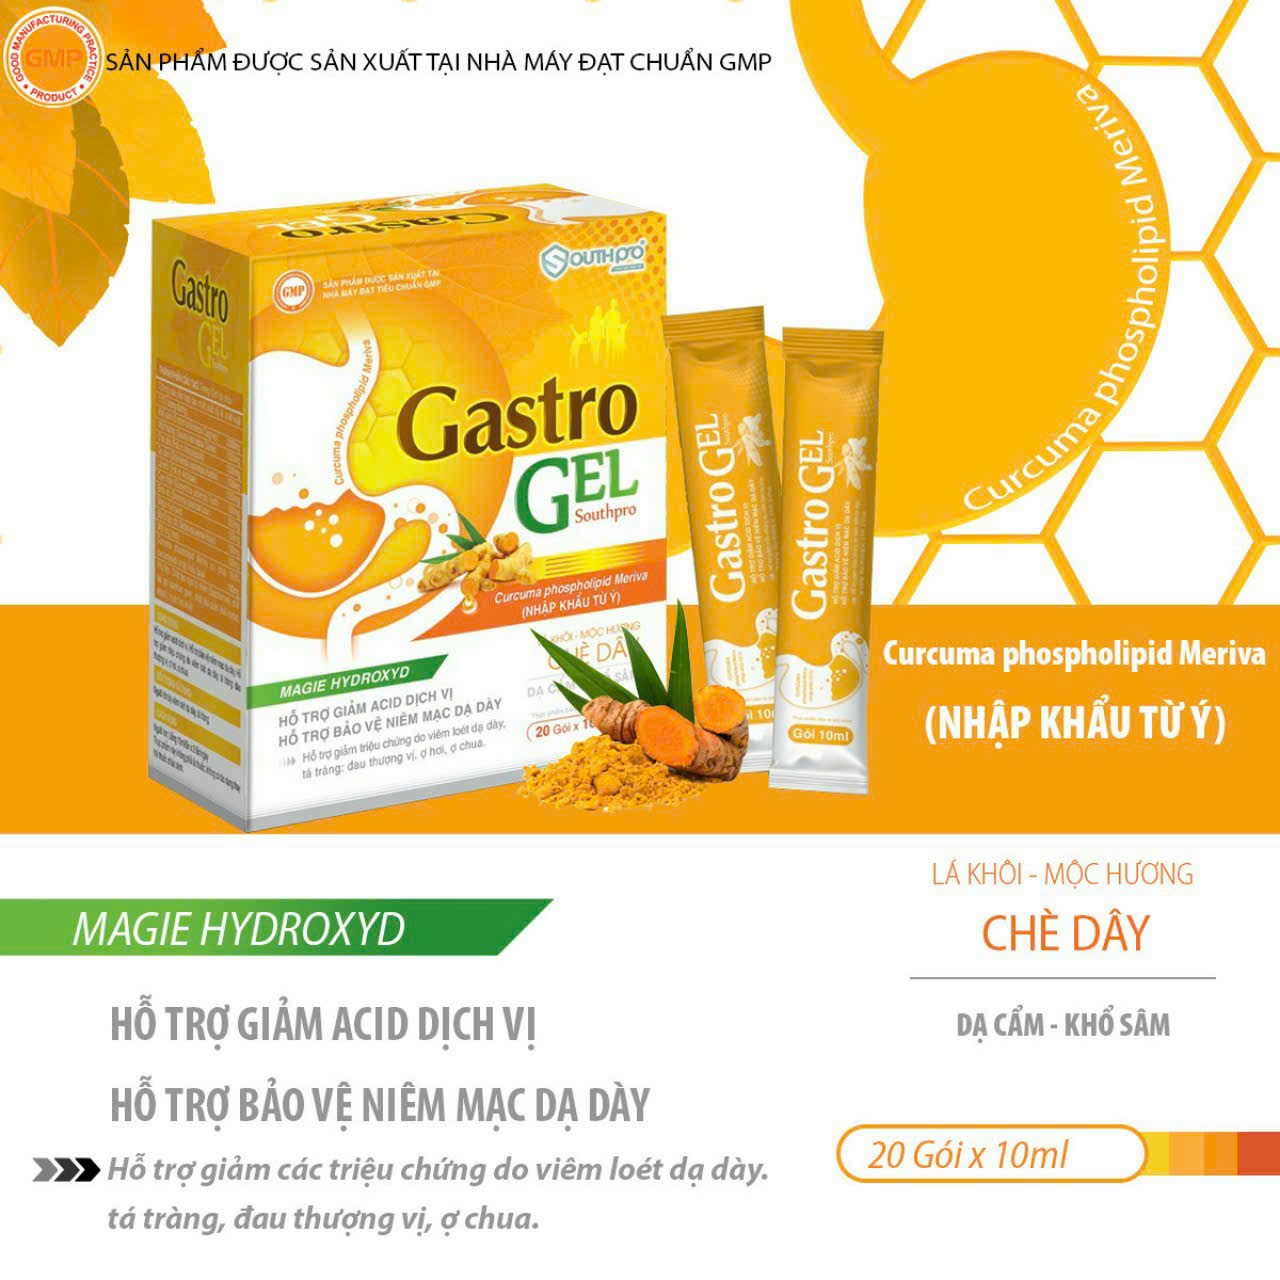 Gastro Gel SOUTHPRO hỗ trợ giảm ACID dịch vị hỗ trợ bảo vệ niêm mạc dạ dày